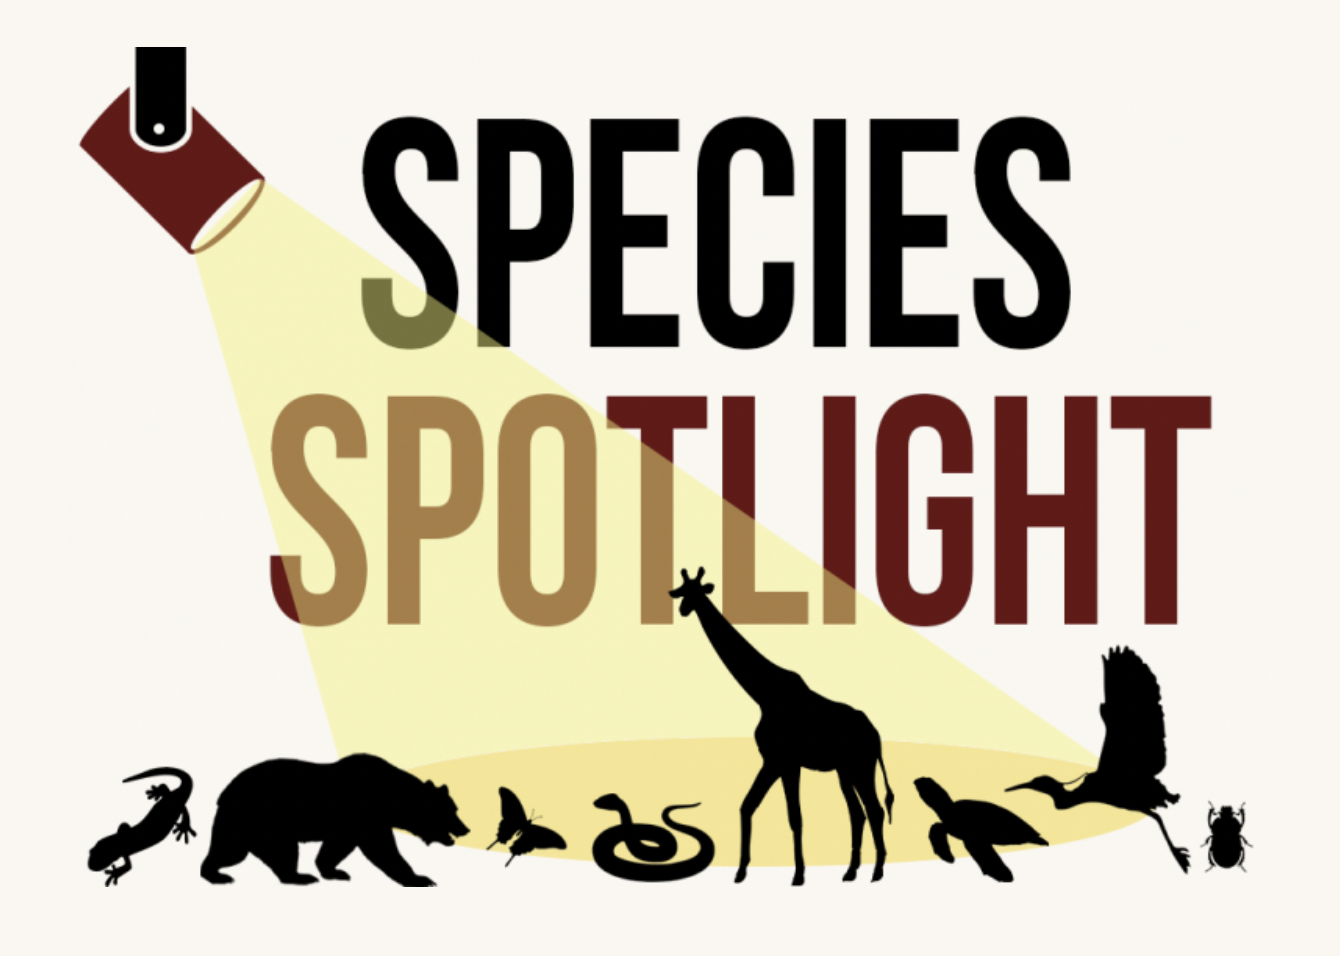 species spotlight